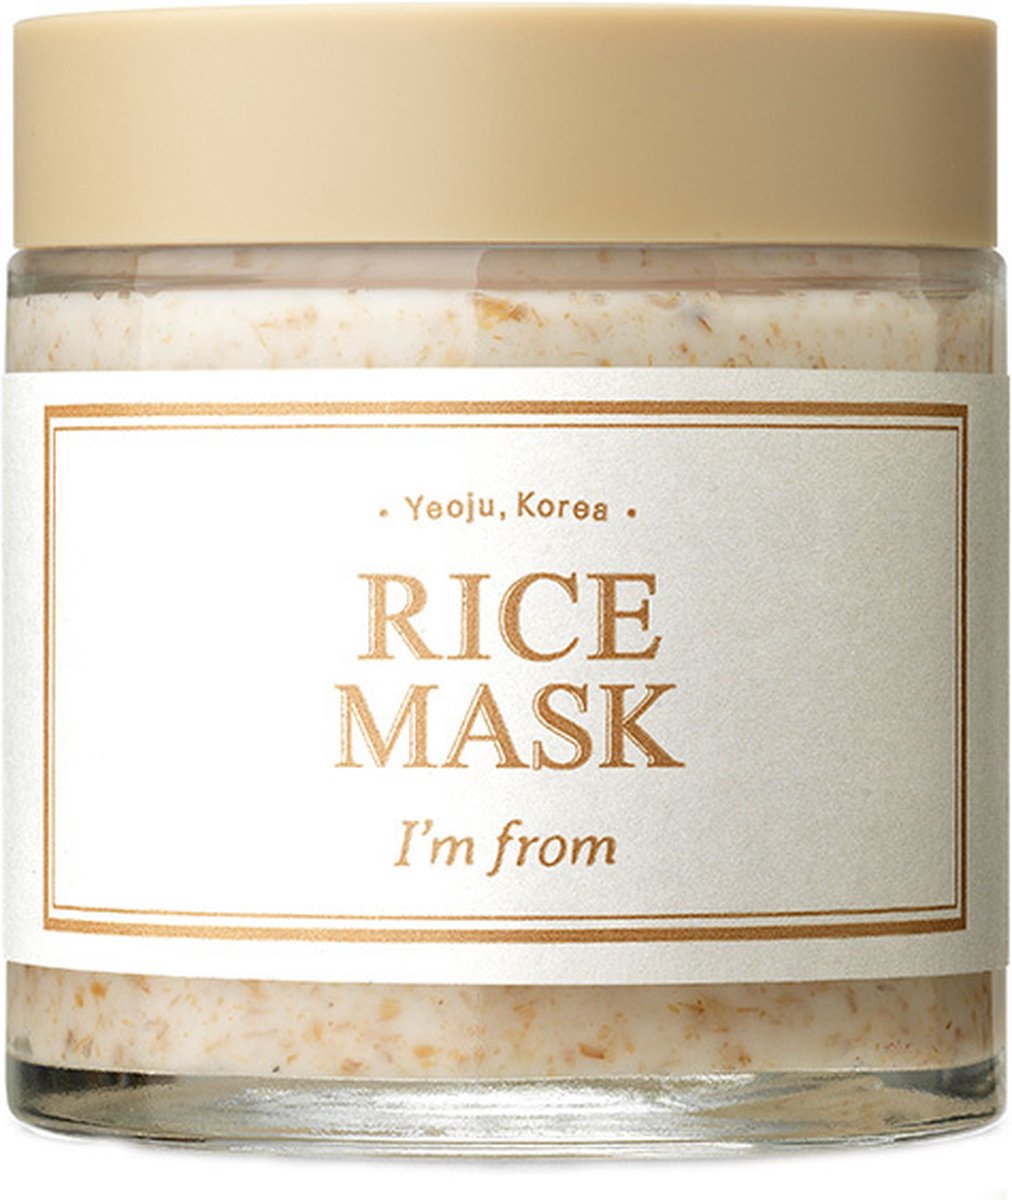 I`M FROM Rice Mask 110g - Korean Skincare